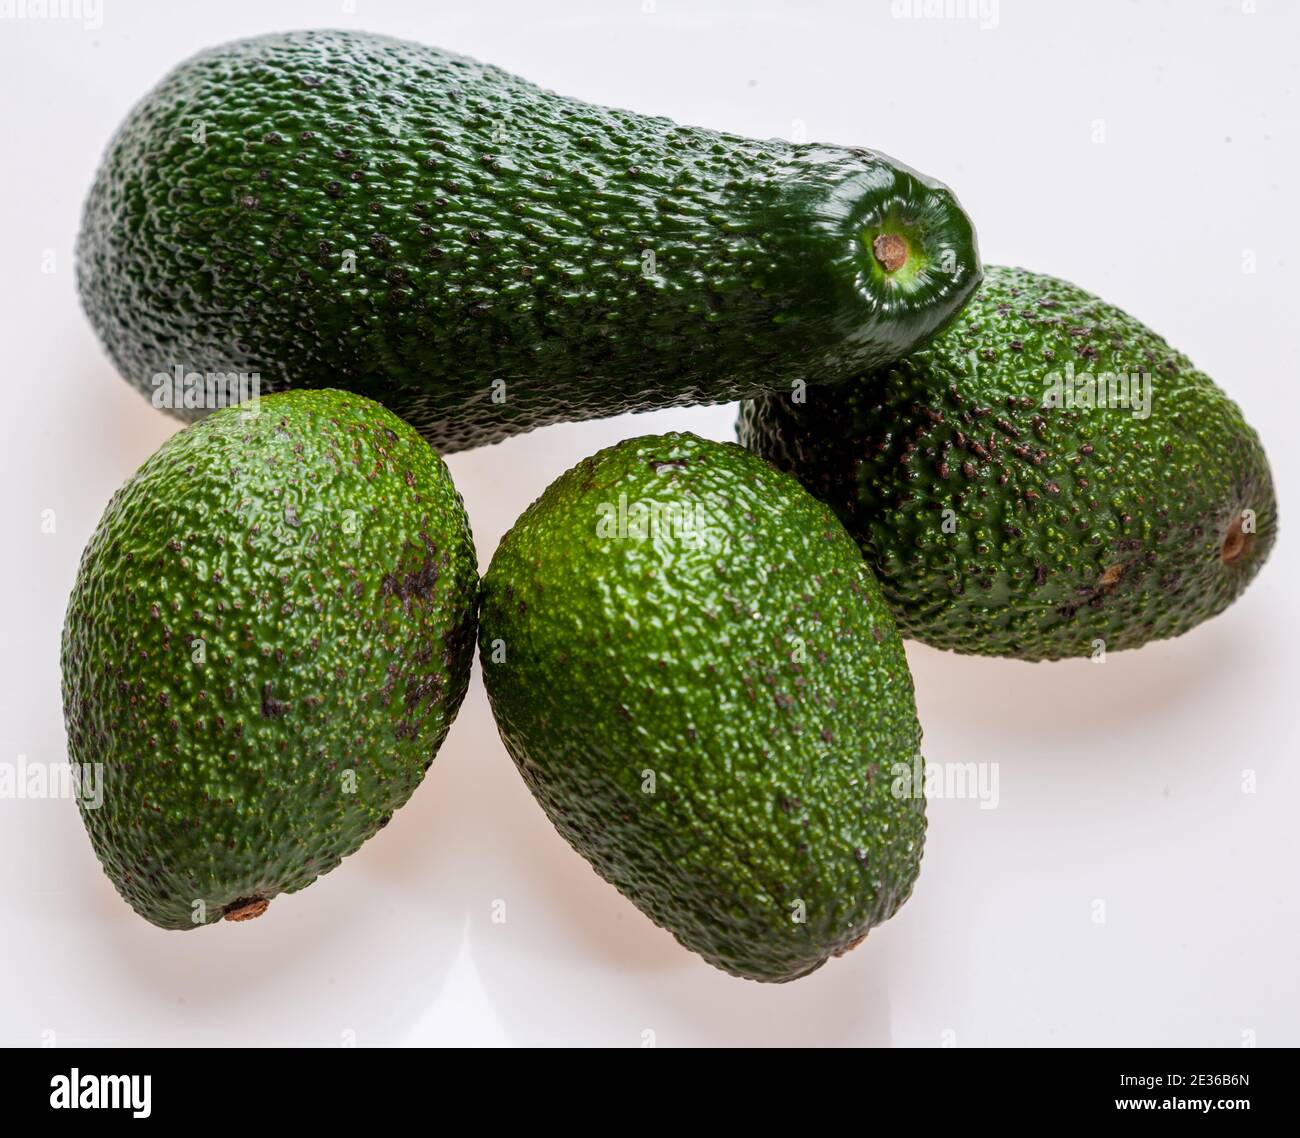 Avocado, Avokado (Persea americana) Stock Photo